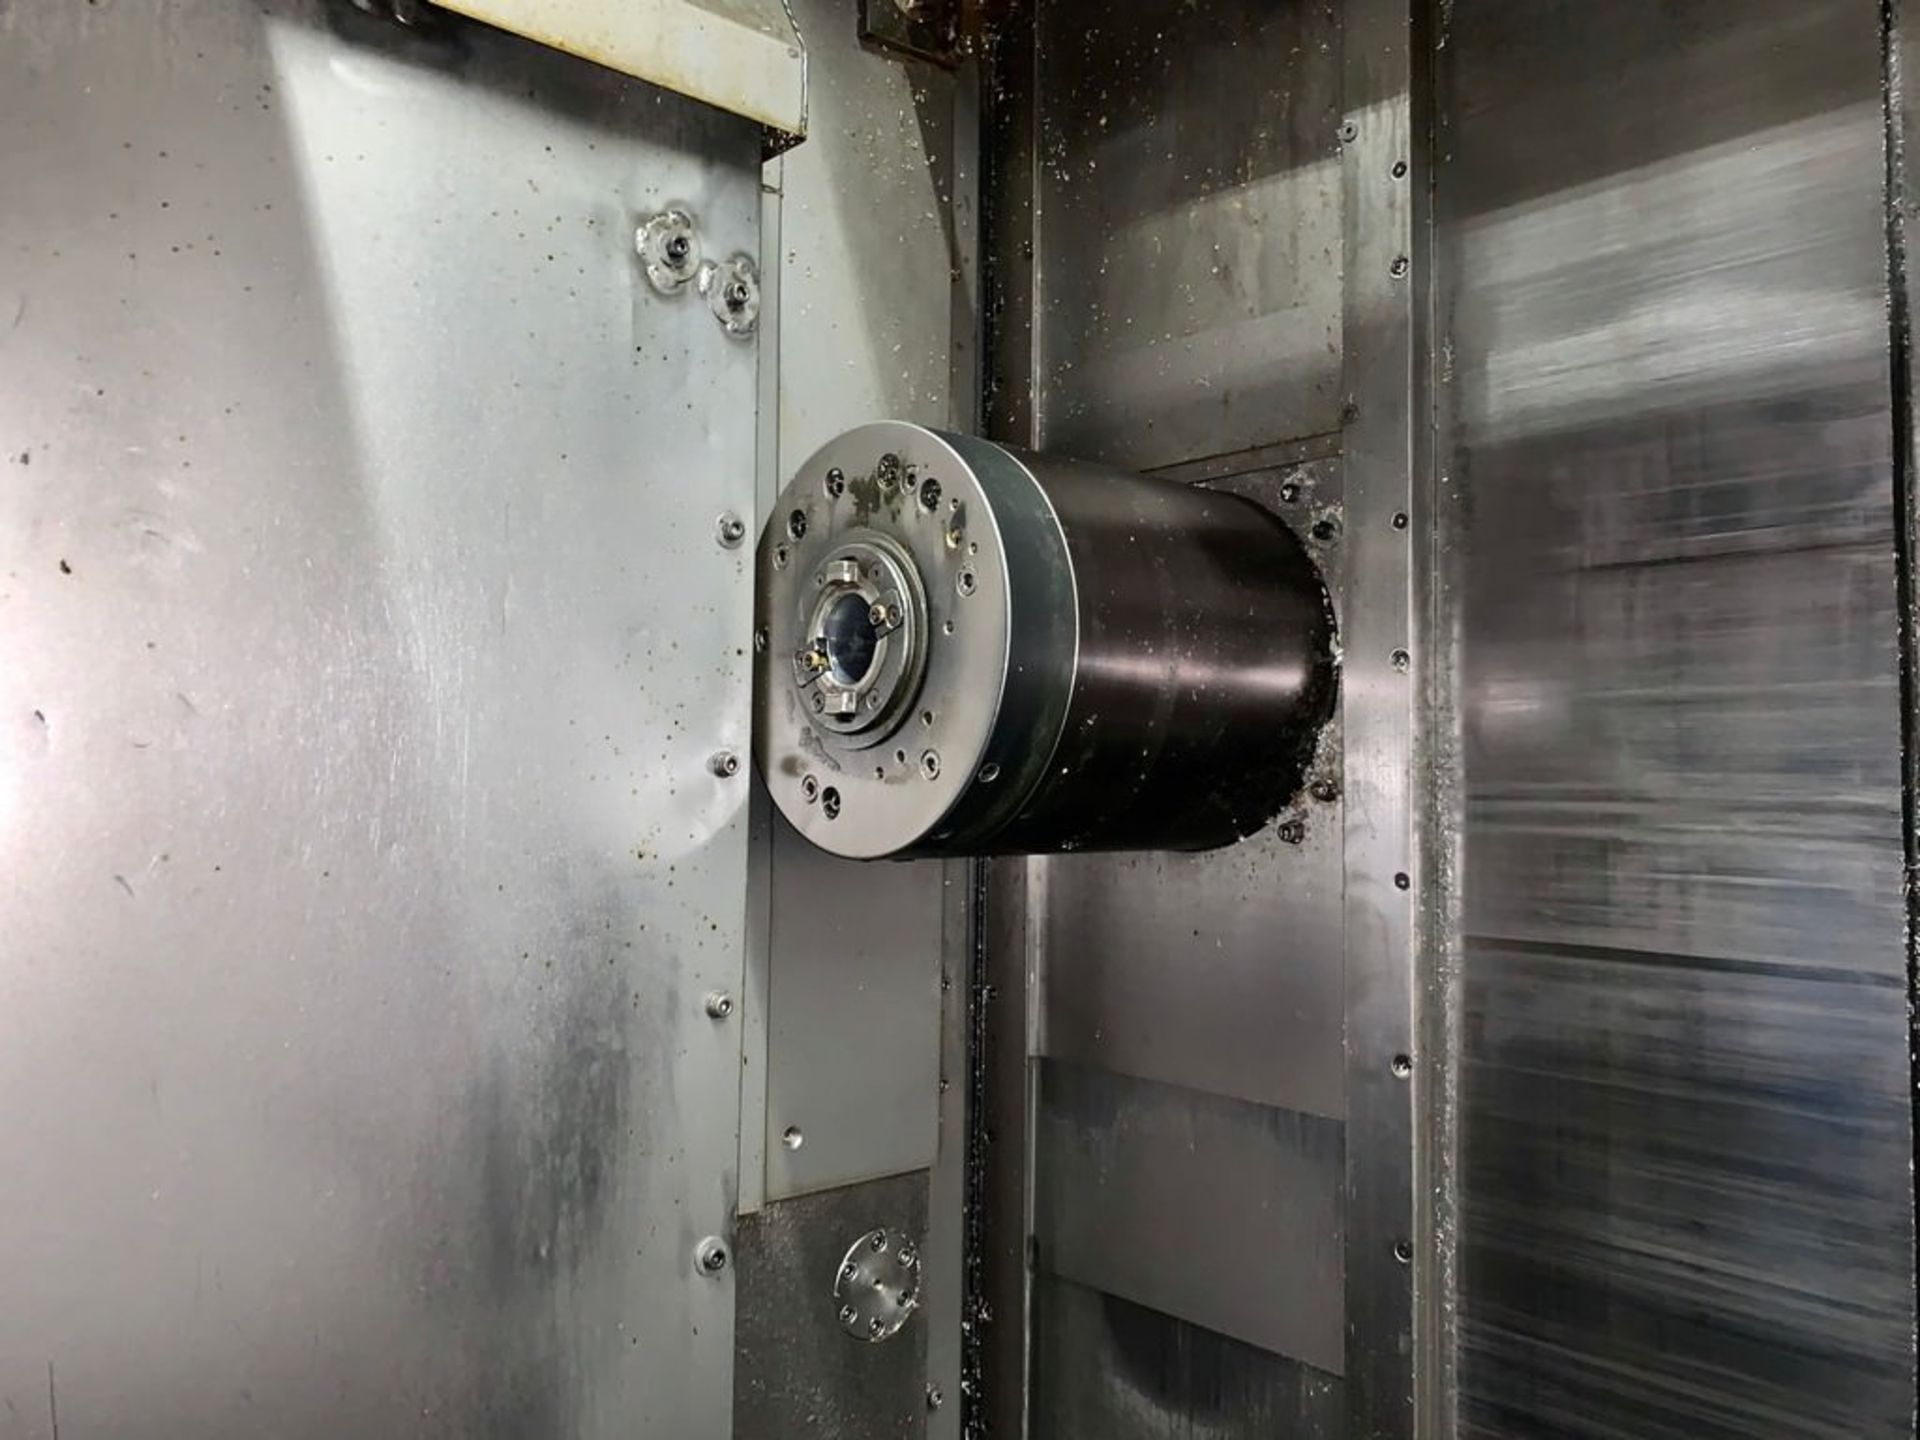 MORI SEIKI SH-500 CNC HORIZONTAL MACHINING CENTER - Image 3 of 10